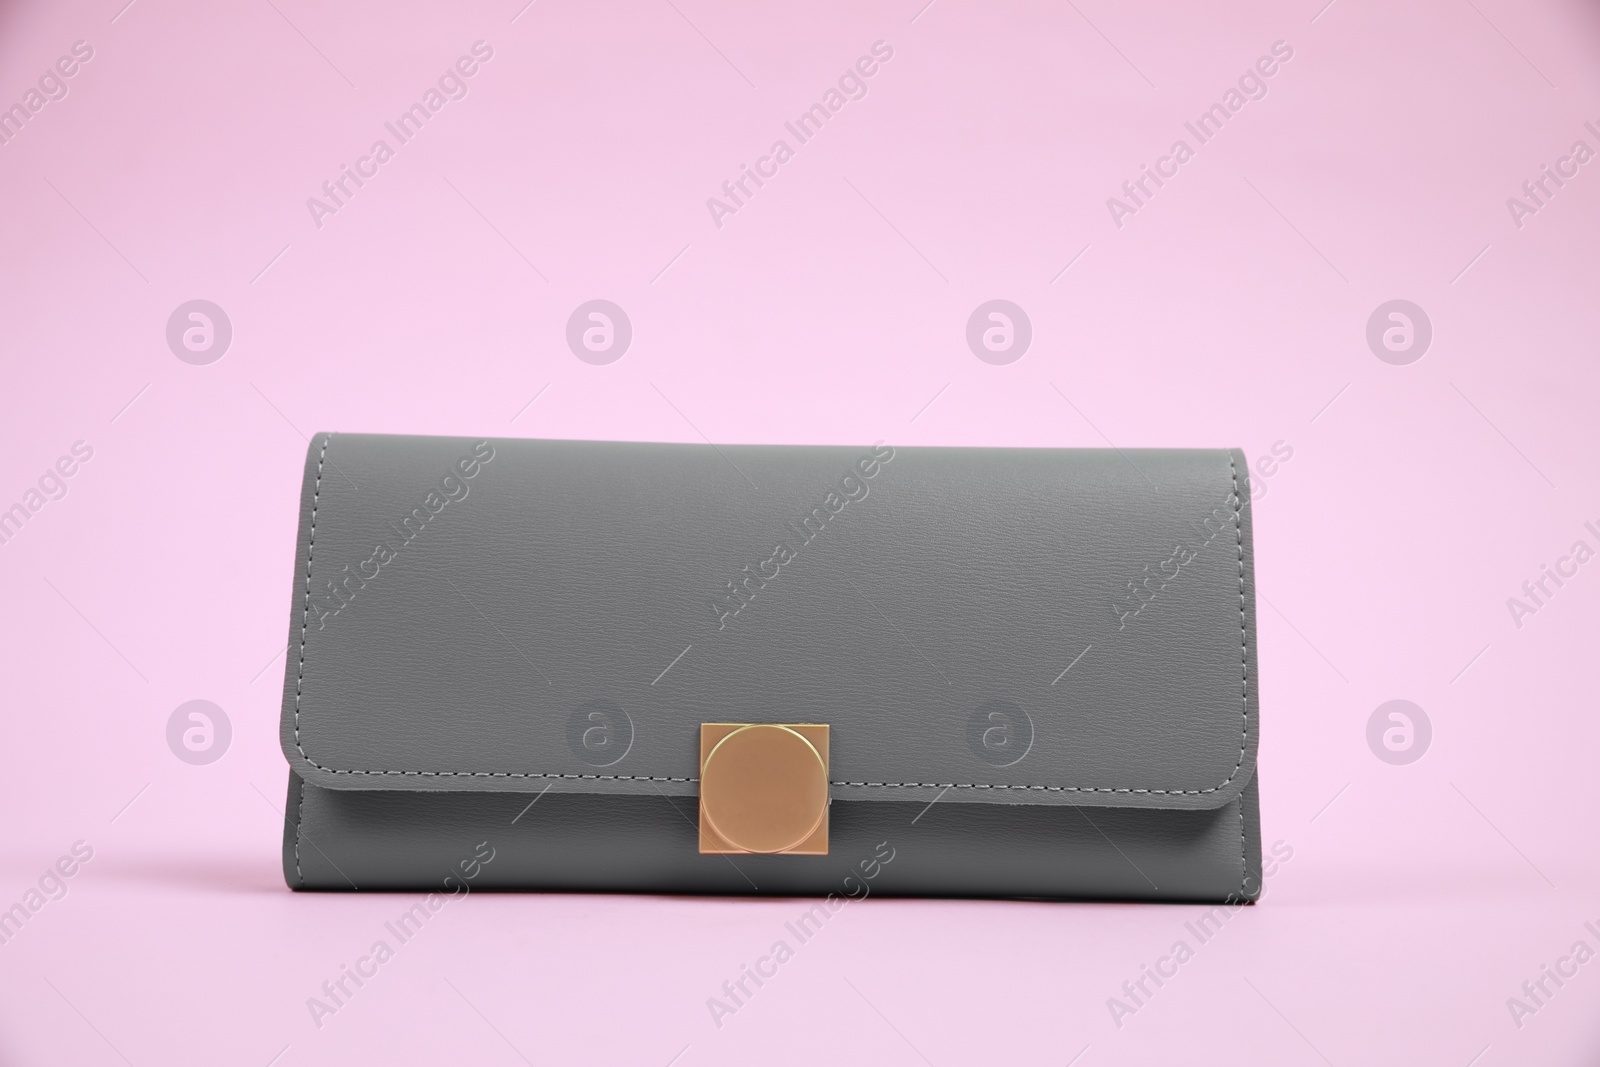 Photo of Stylish grey leather purse on pink background